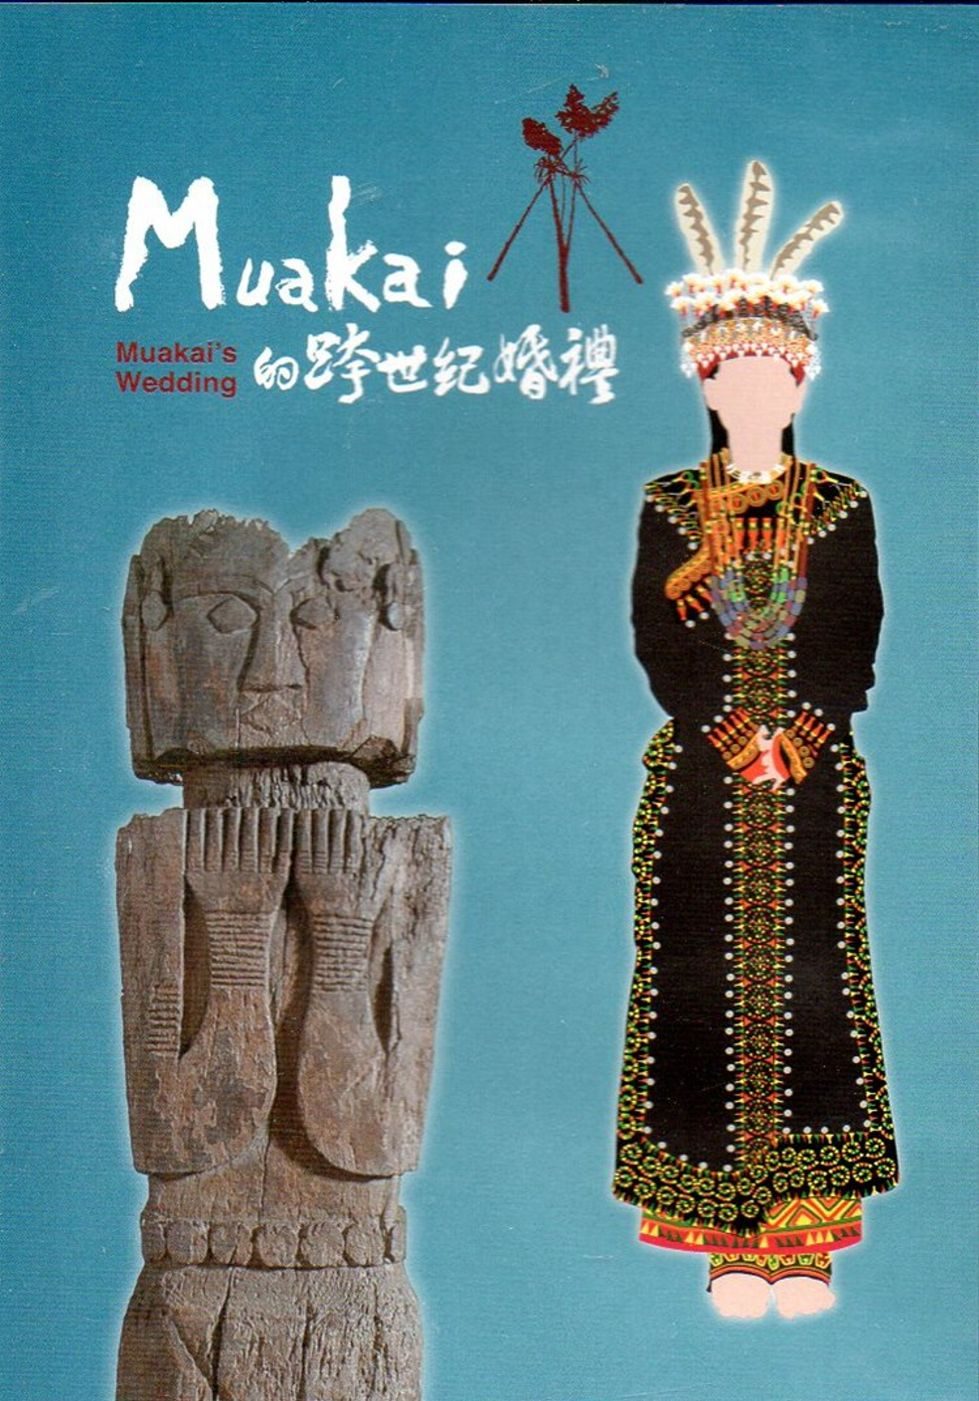 Muakai的跨世紀婚禮(光碟)